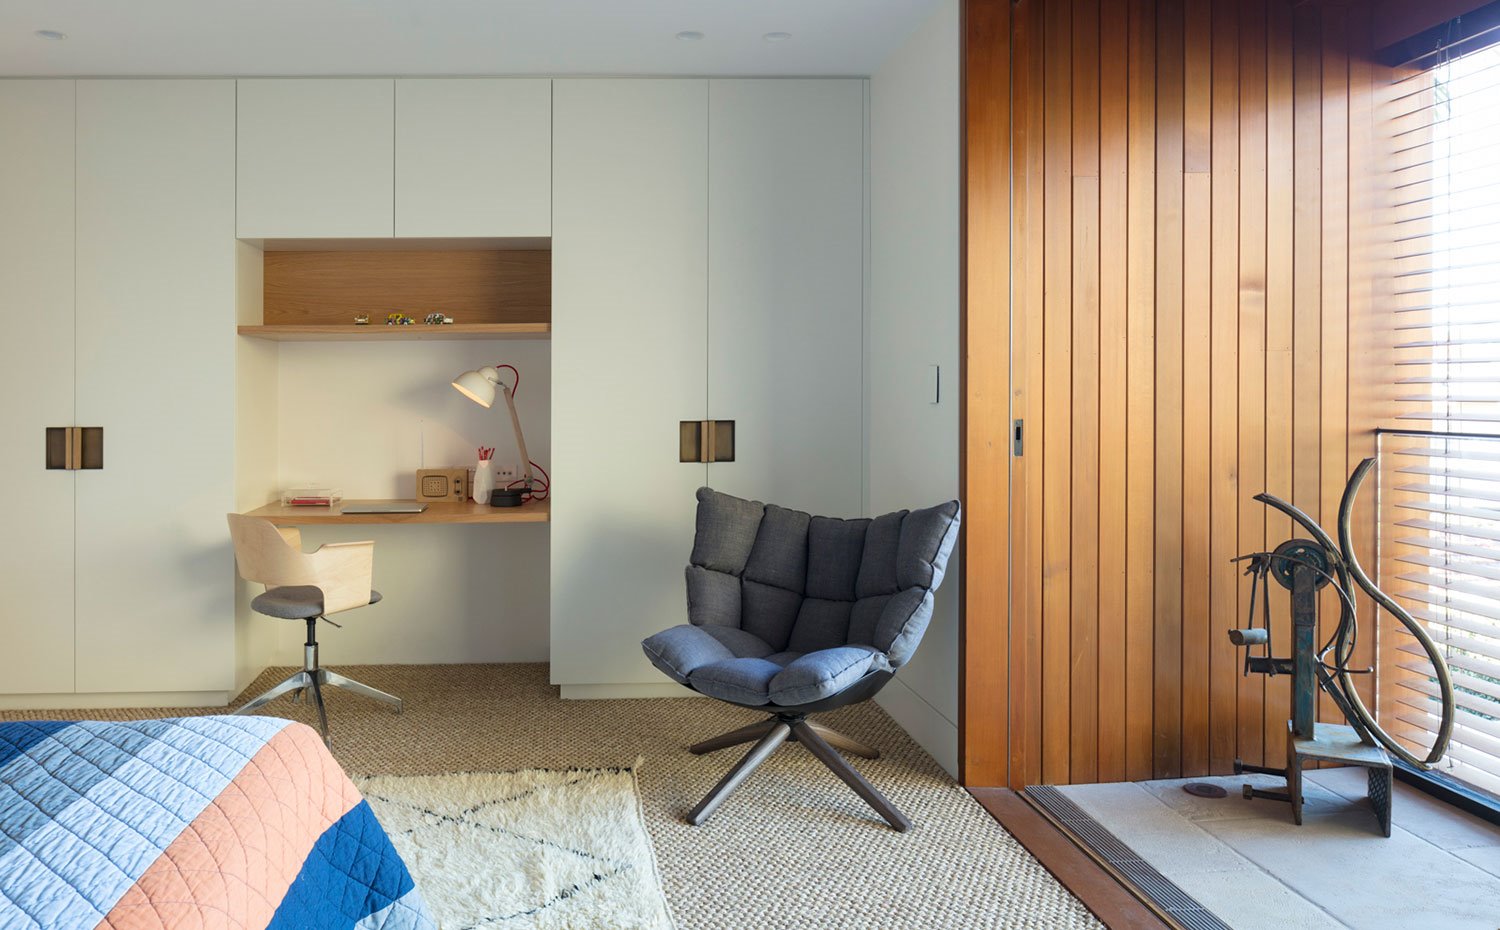 Dormitorio con zona de escritorio, butaca y rincón abierto revestido de madera